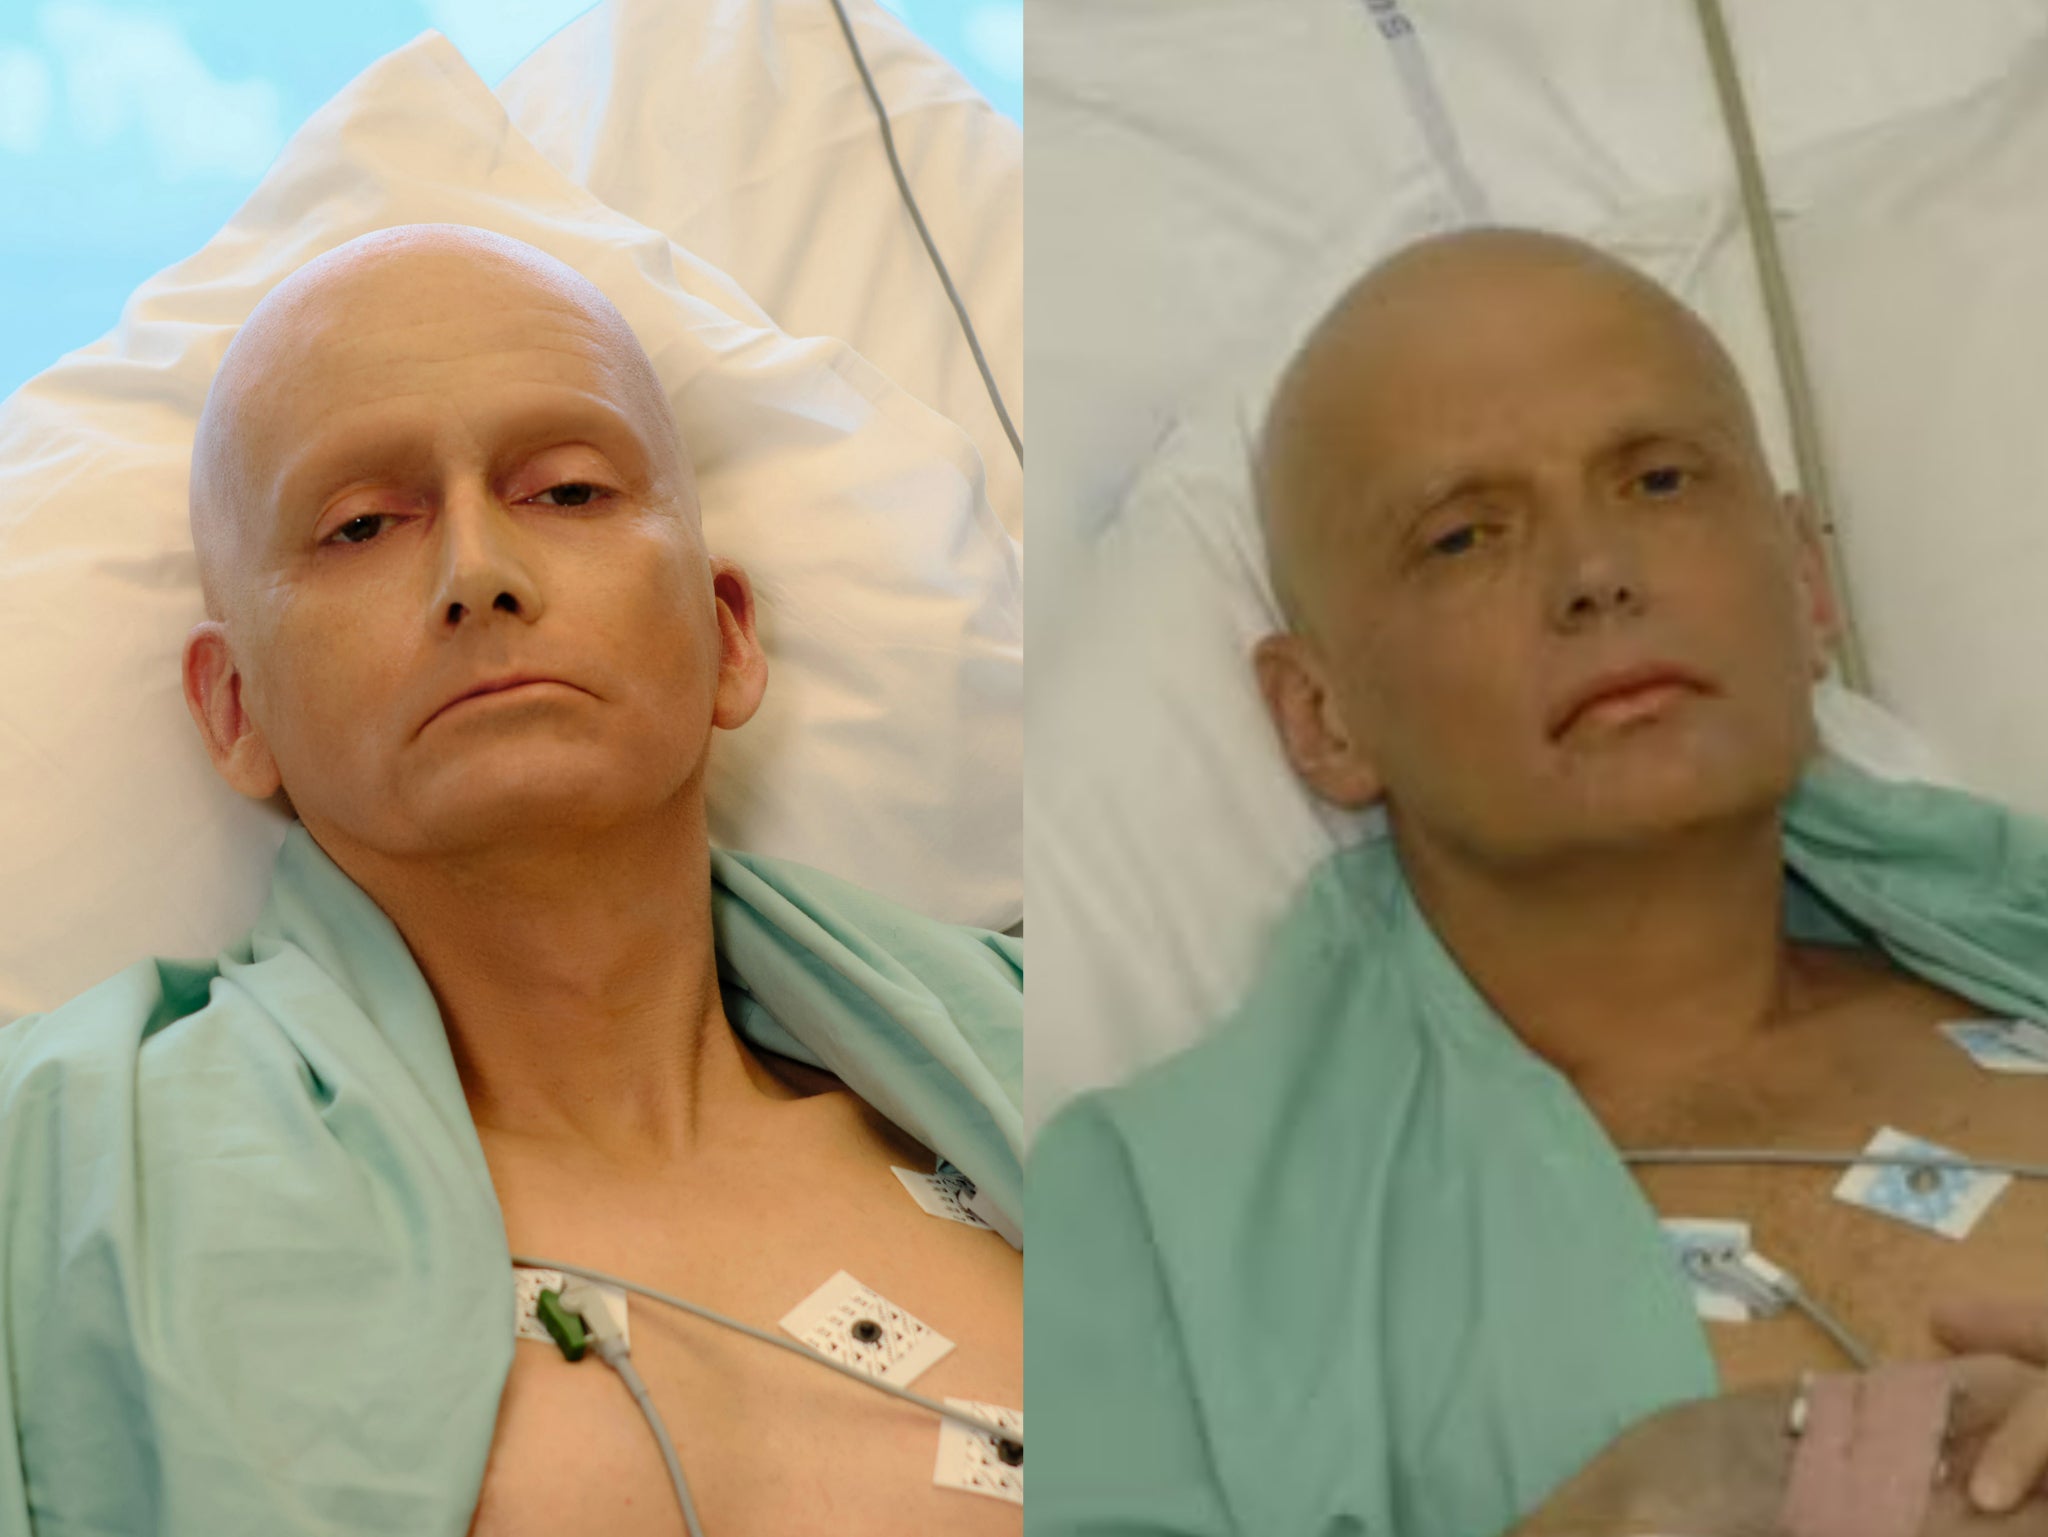 David Tennant as Alexander Litvinenko on the left, and the real Alexander Litvinenko on the right